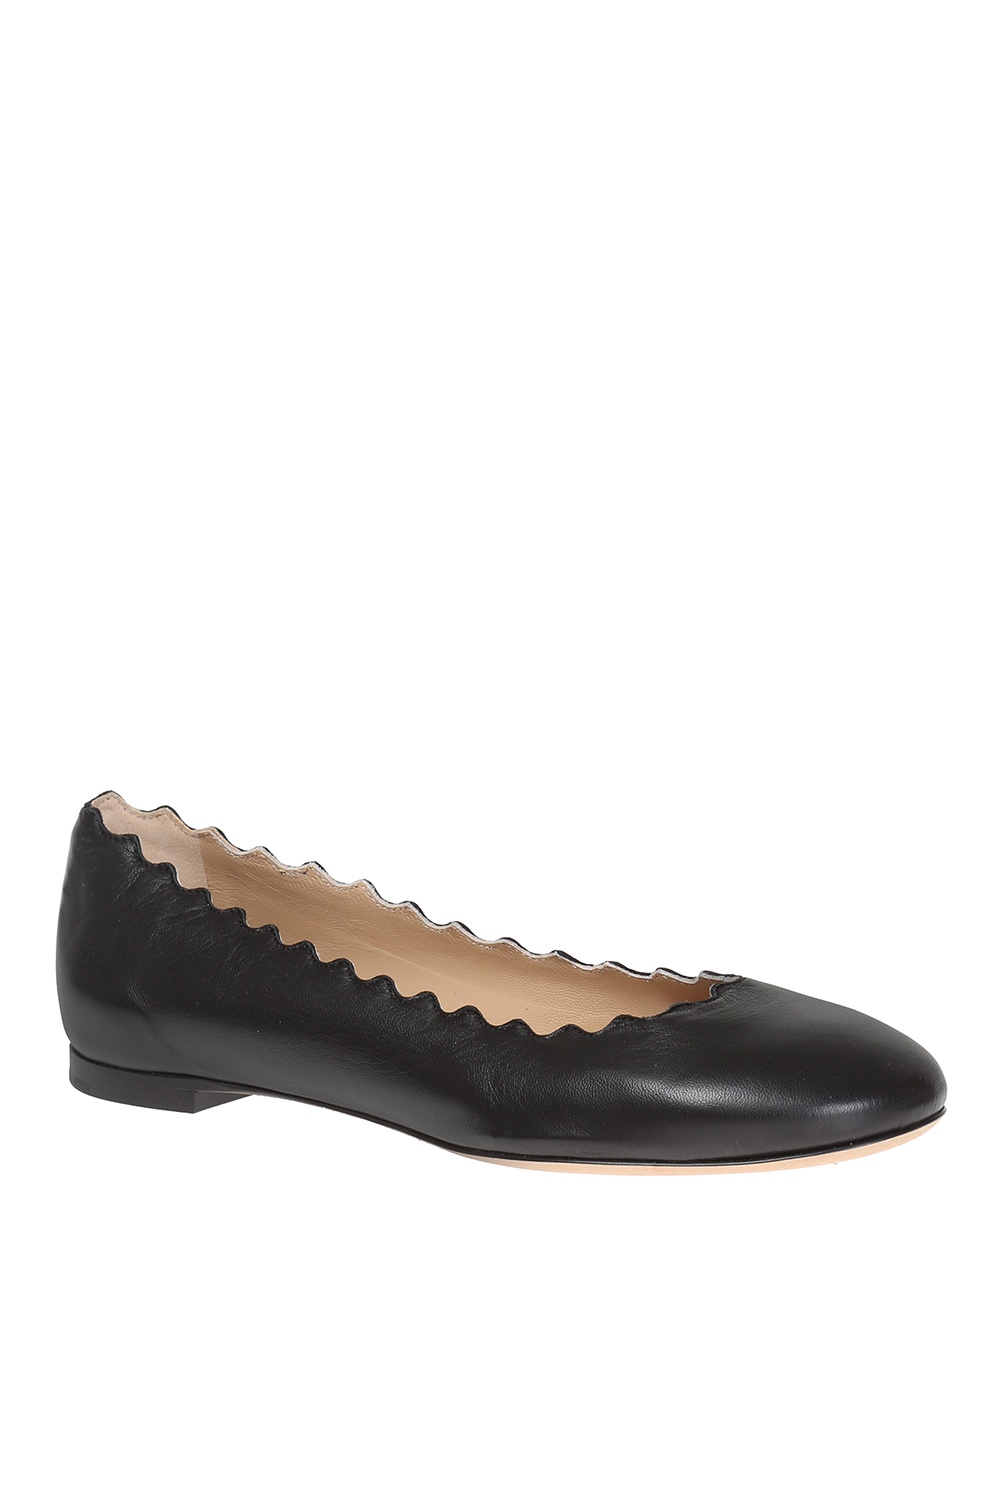 Chloé 'Lauren' leather ballet flats | Women's Shoes | Vitkac